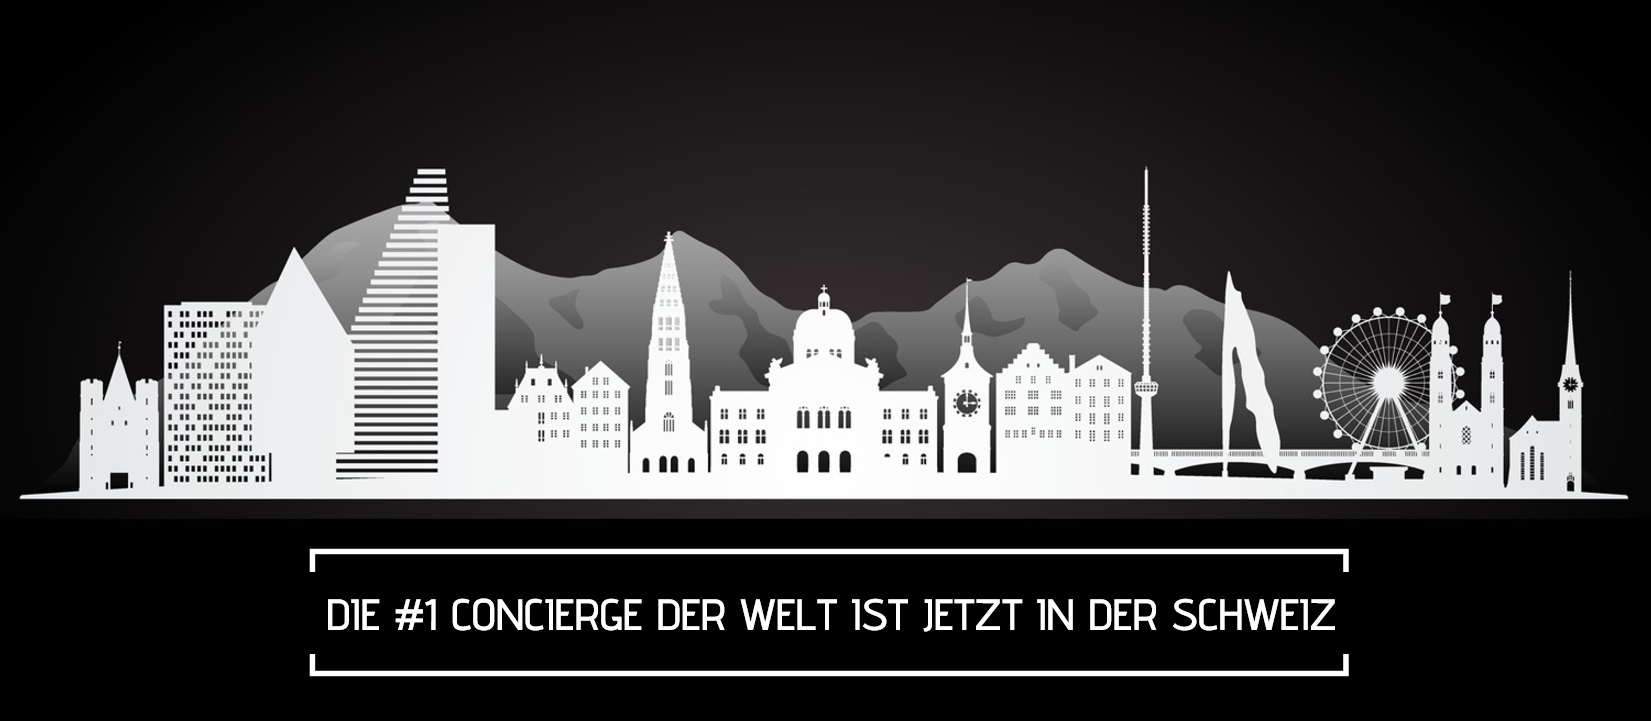 Der #1 Concierge der Welt ist jetzt in der Schweiz